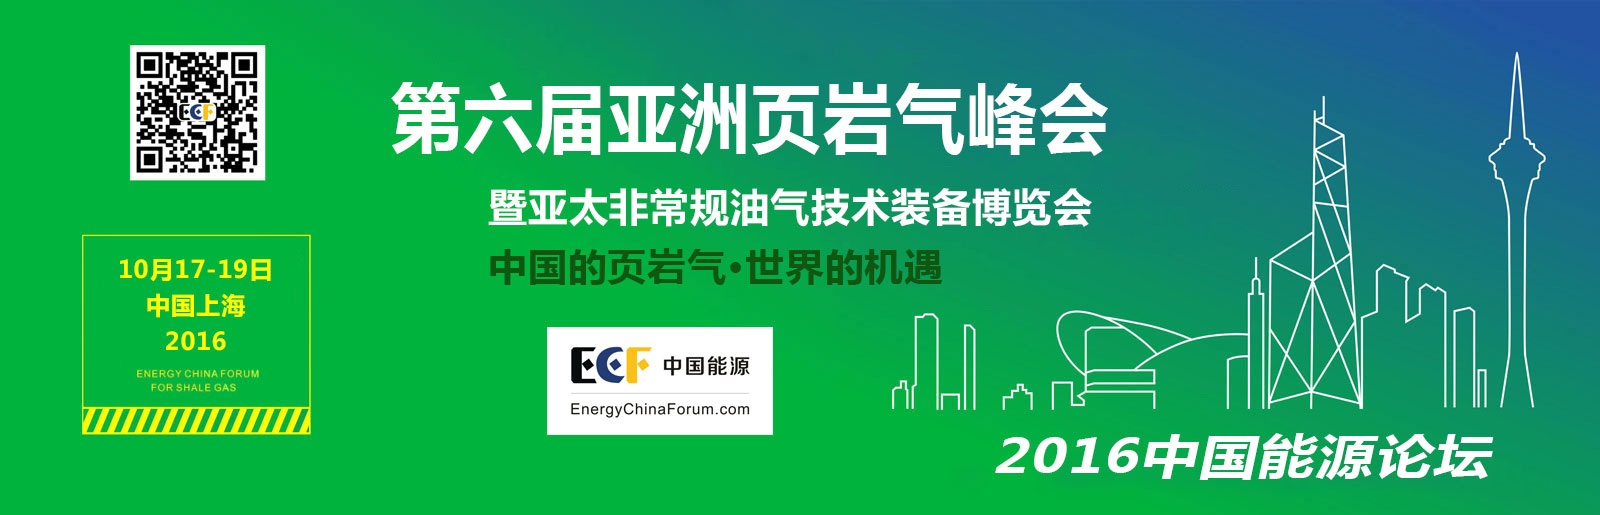 ECF2016第6届亚太页岩气峰会暨非常规油气技术创新成果展